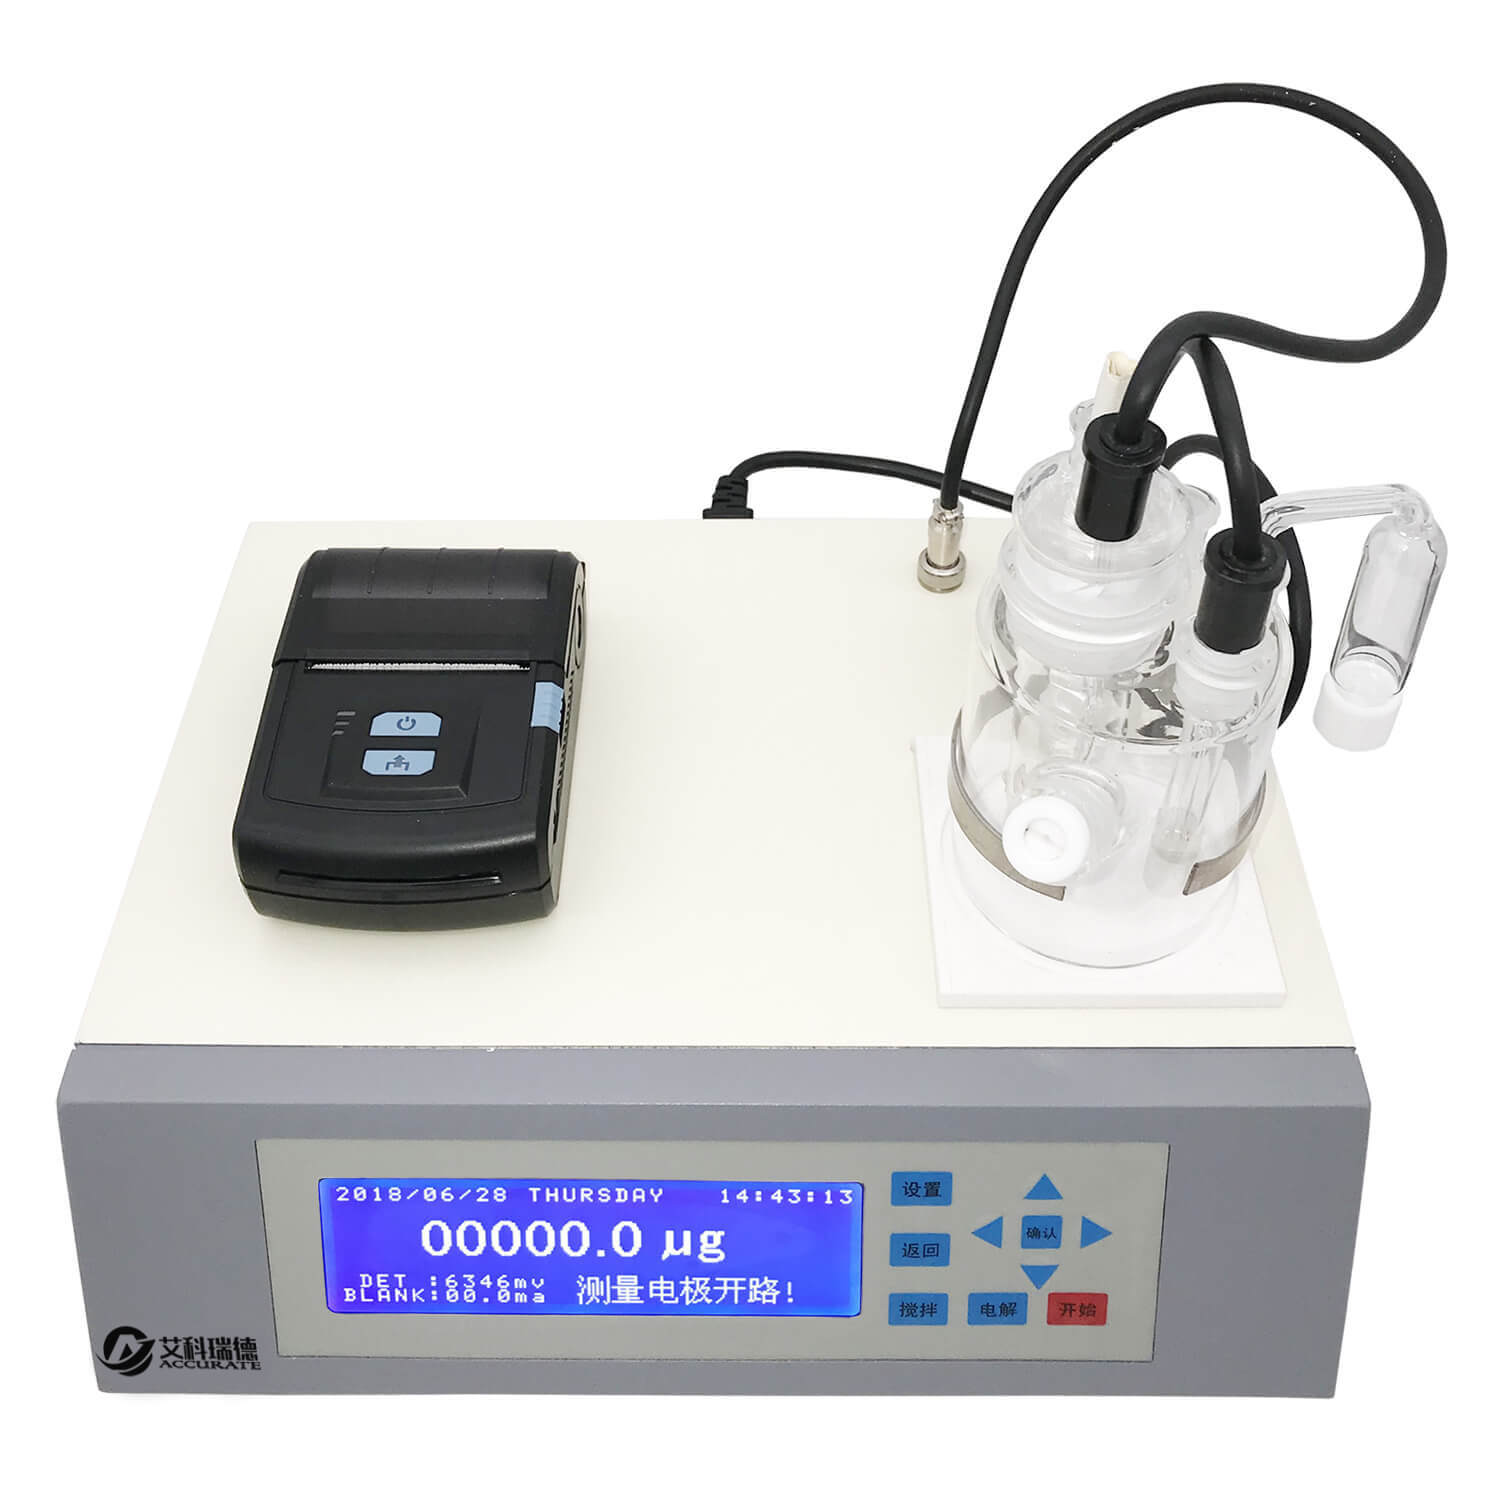 微量水分测定仪可检测哪些物质？